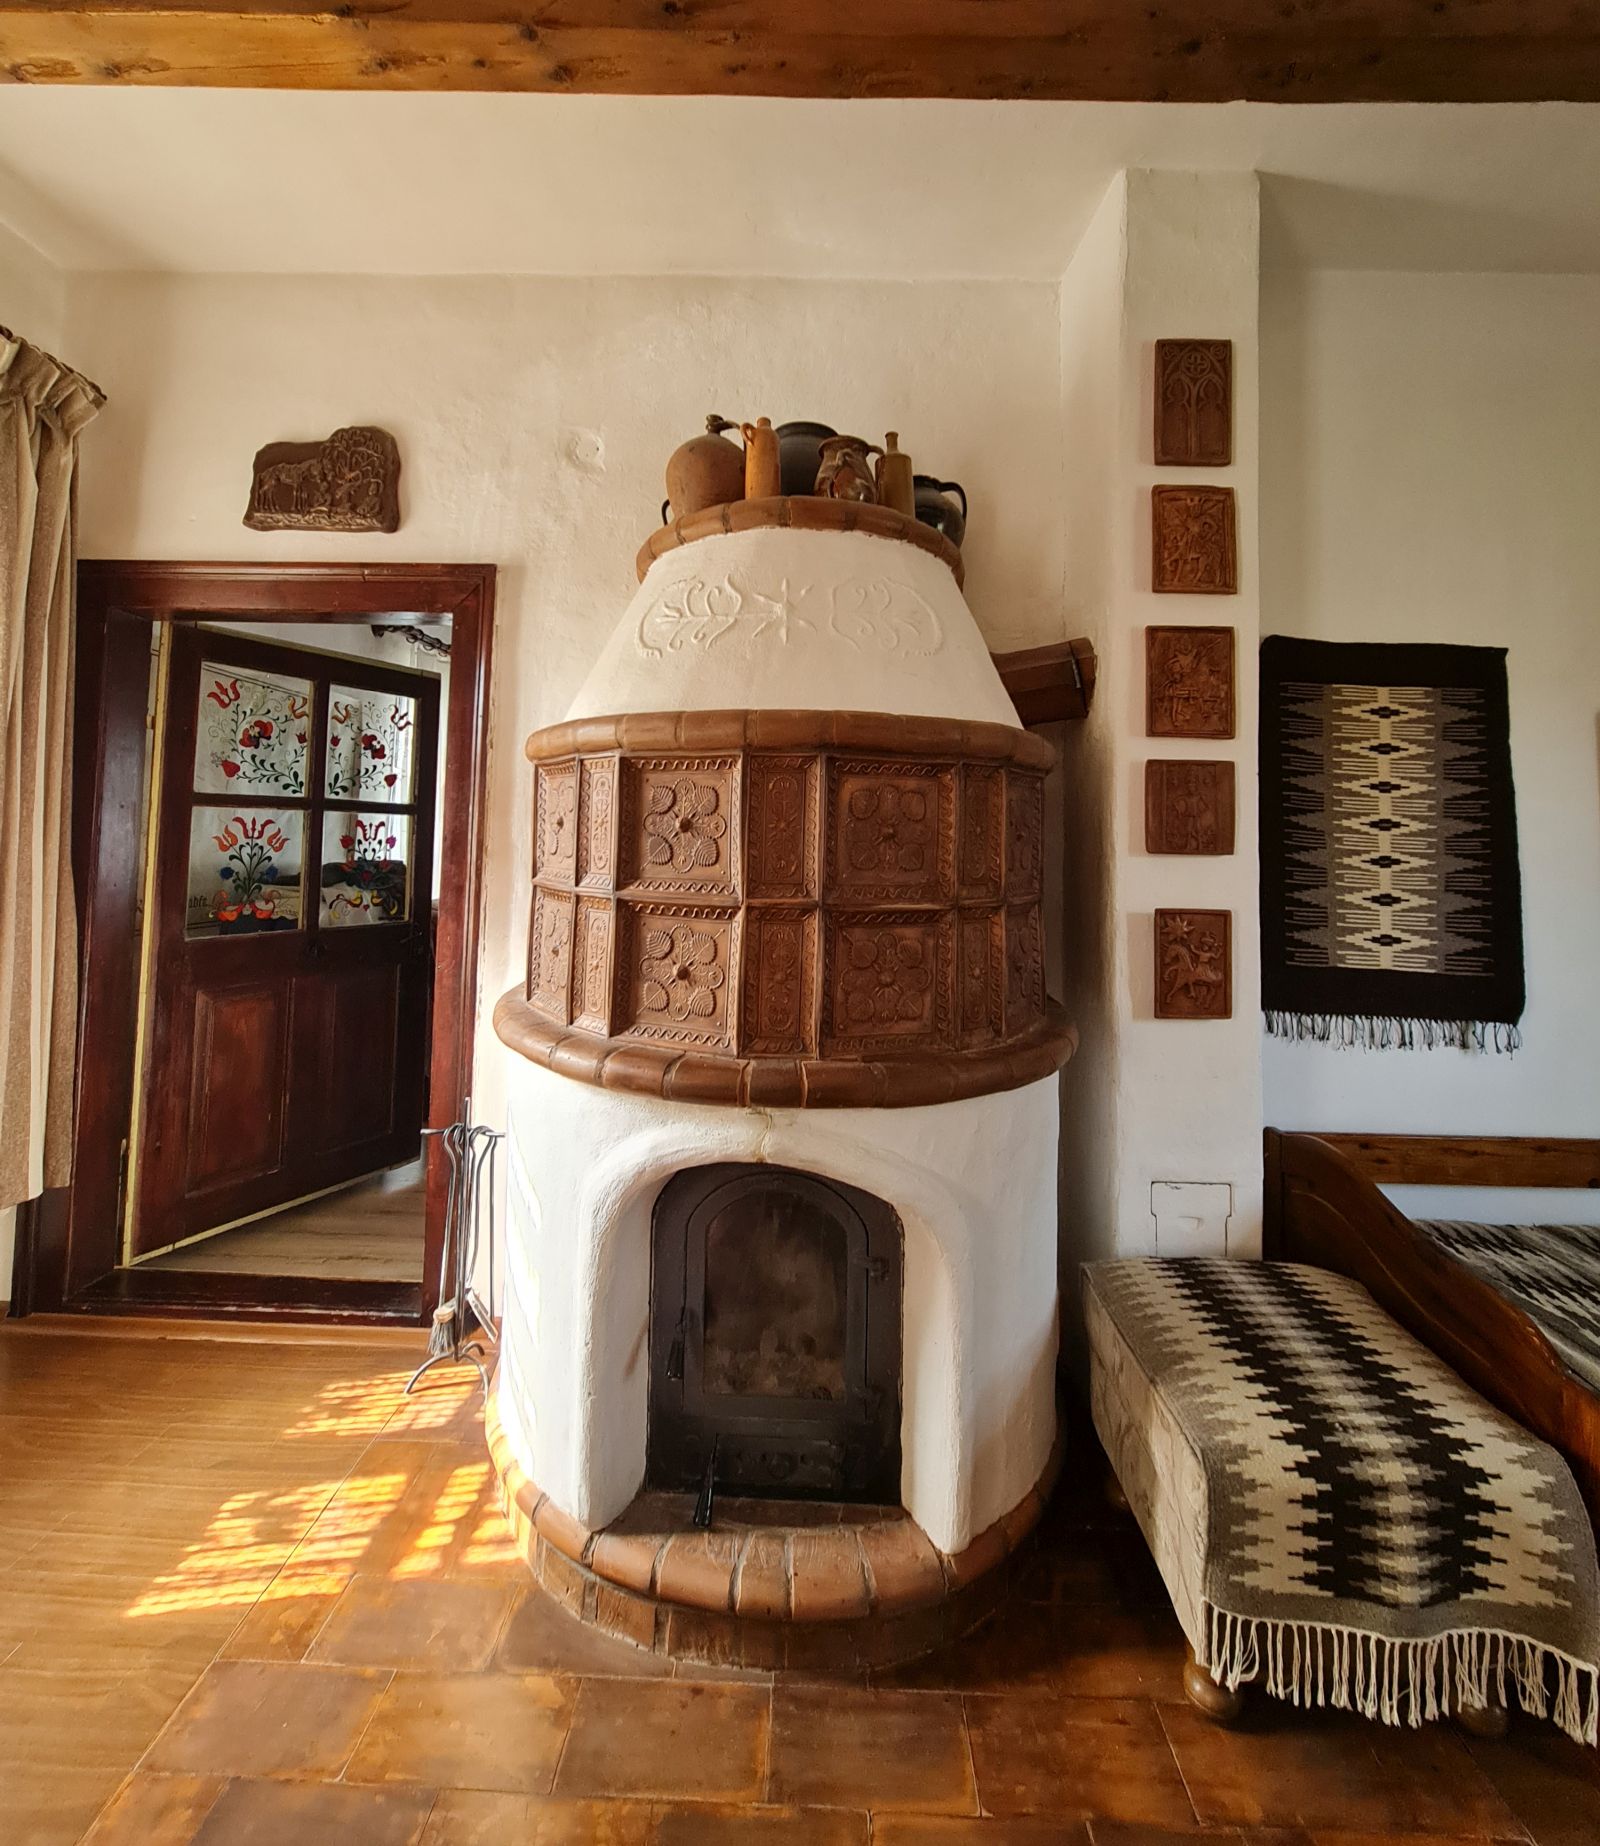 Mi-a plăcut mult cum și pe lângă soba frumoasă construită de Győző Hegyeli, pereții sunt decorați cu alte obiecte în ton. Inclusiv vasele de ceramică de deasupra sobei par a fi la locul lor.